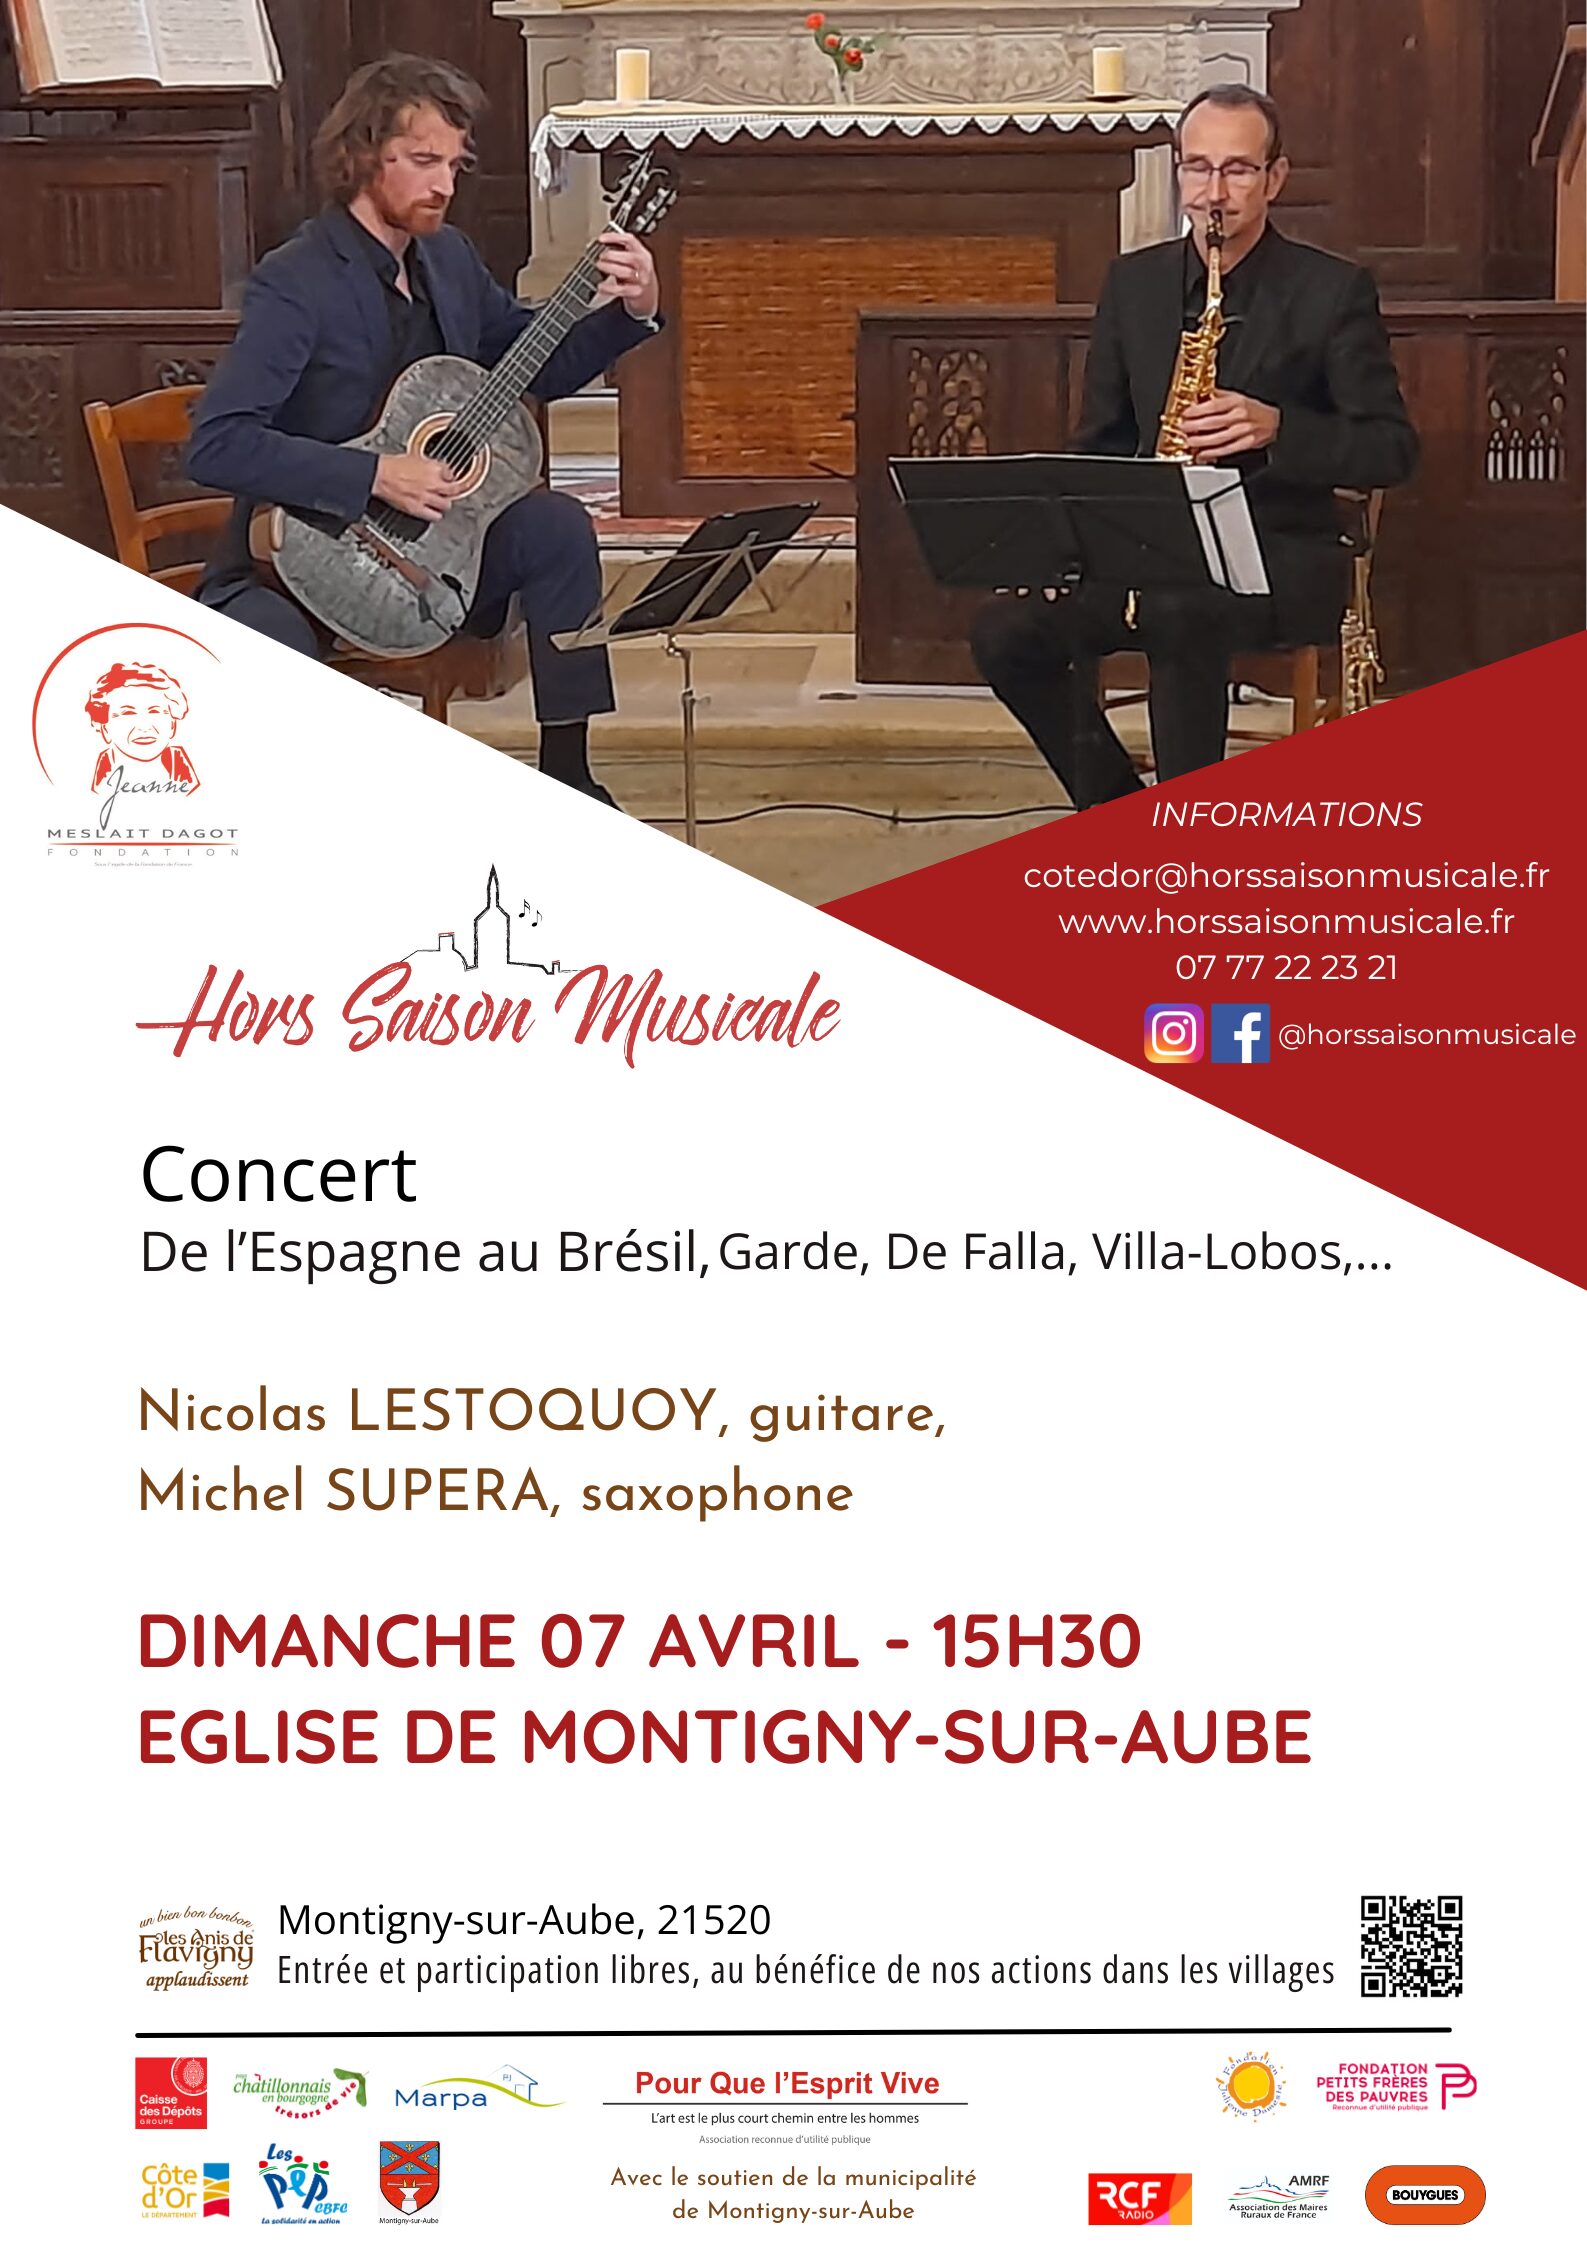 Montigny-sur-Aubze